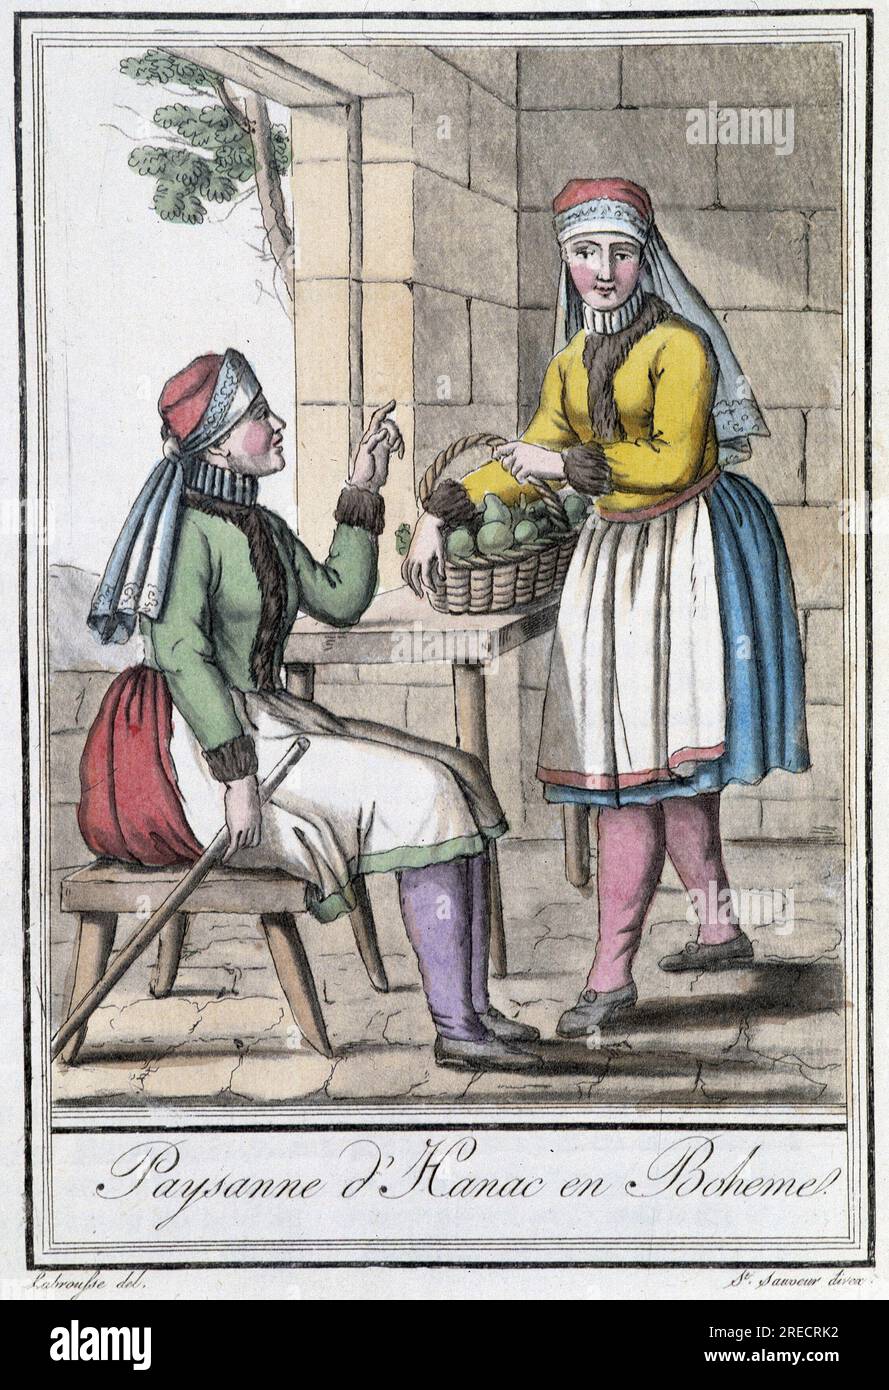 Paysanne d'Hanac, en Boheme (Tchecoslovaquie) - in "Encyclopedie des voyages" par Grasset St Sauveur, Paris, 1796 Stock Photo